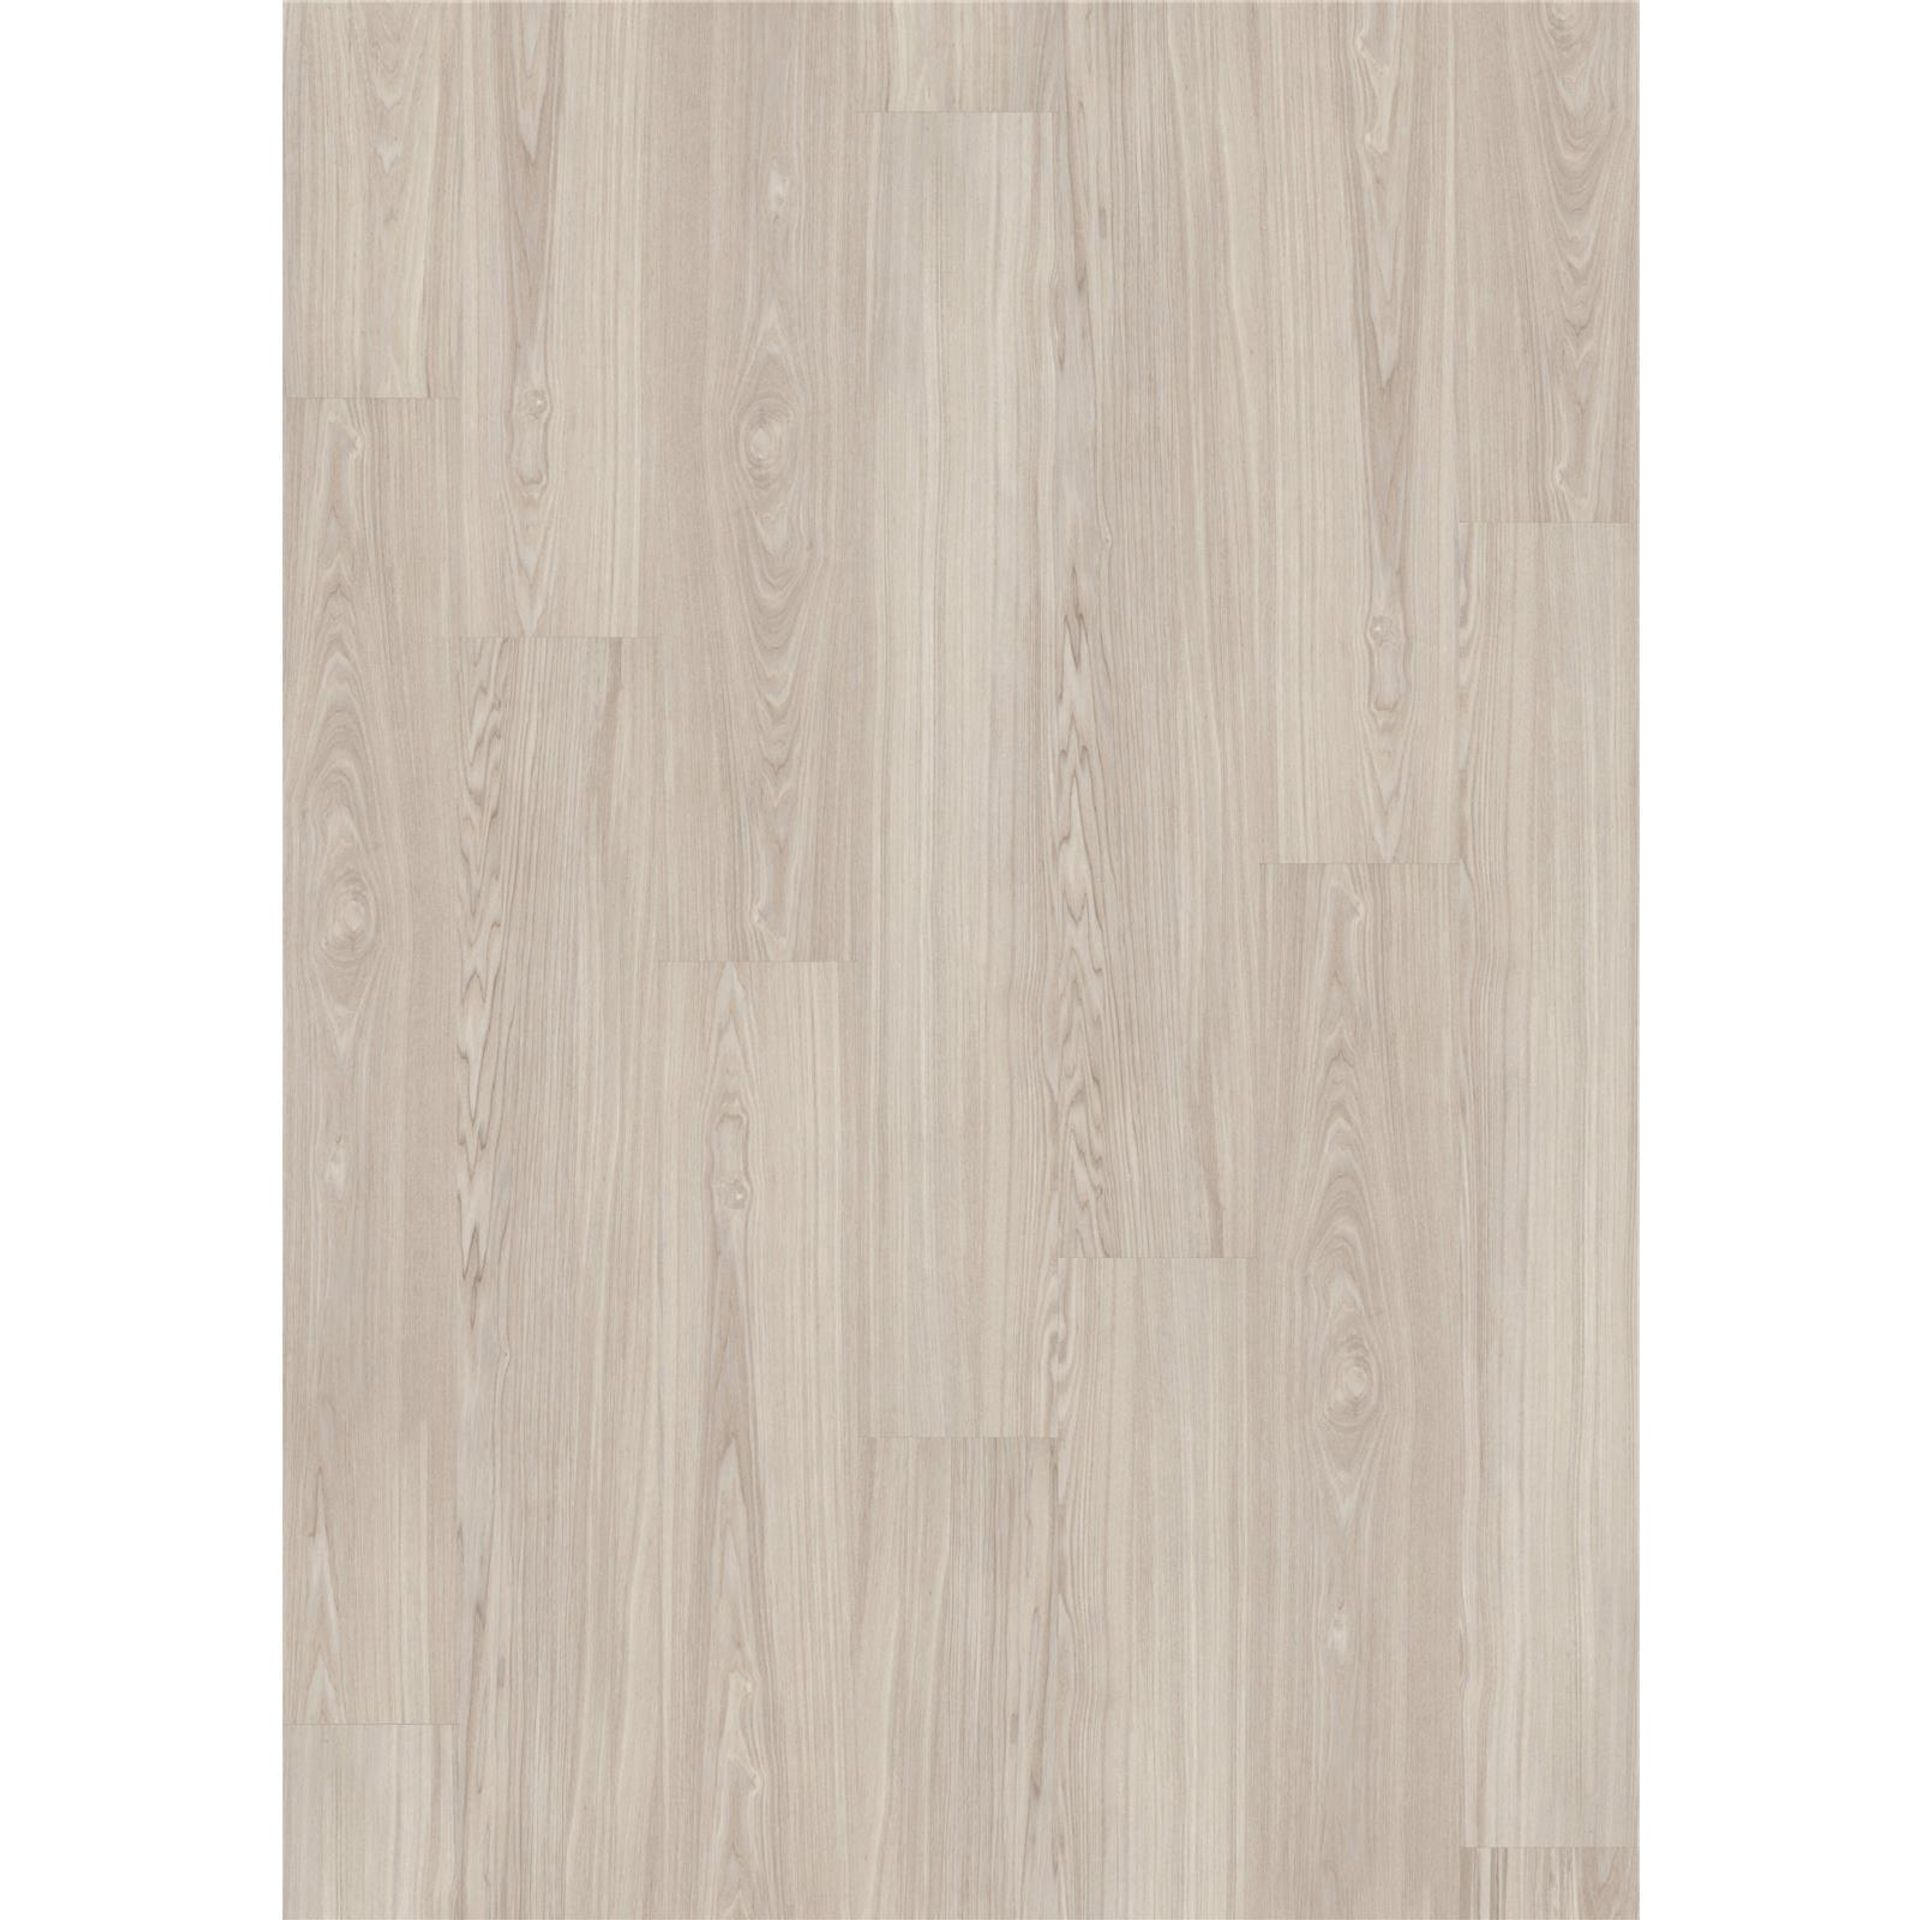 Designboden Dryback 2853 Worn Ash - Planke 18,42 cm x 121,92 cm - Nutzschichtdicke 0,4 mm